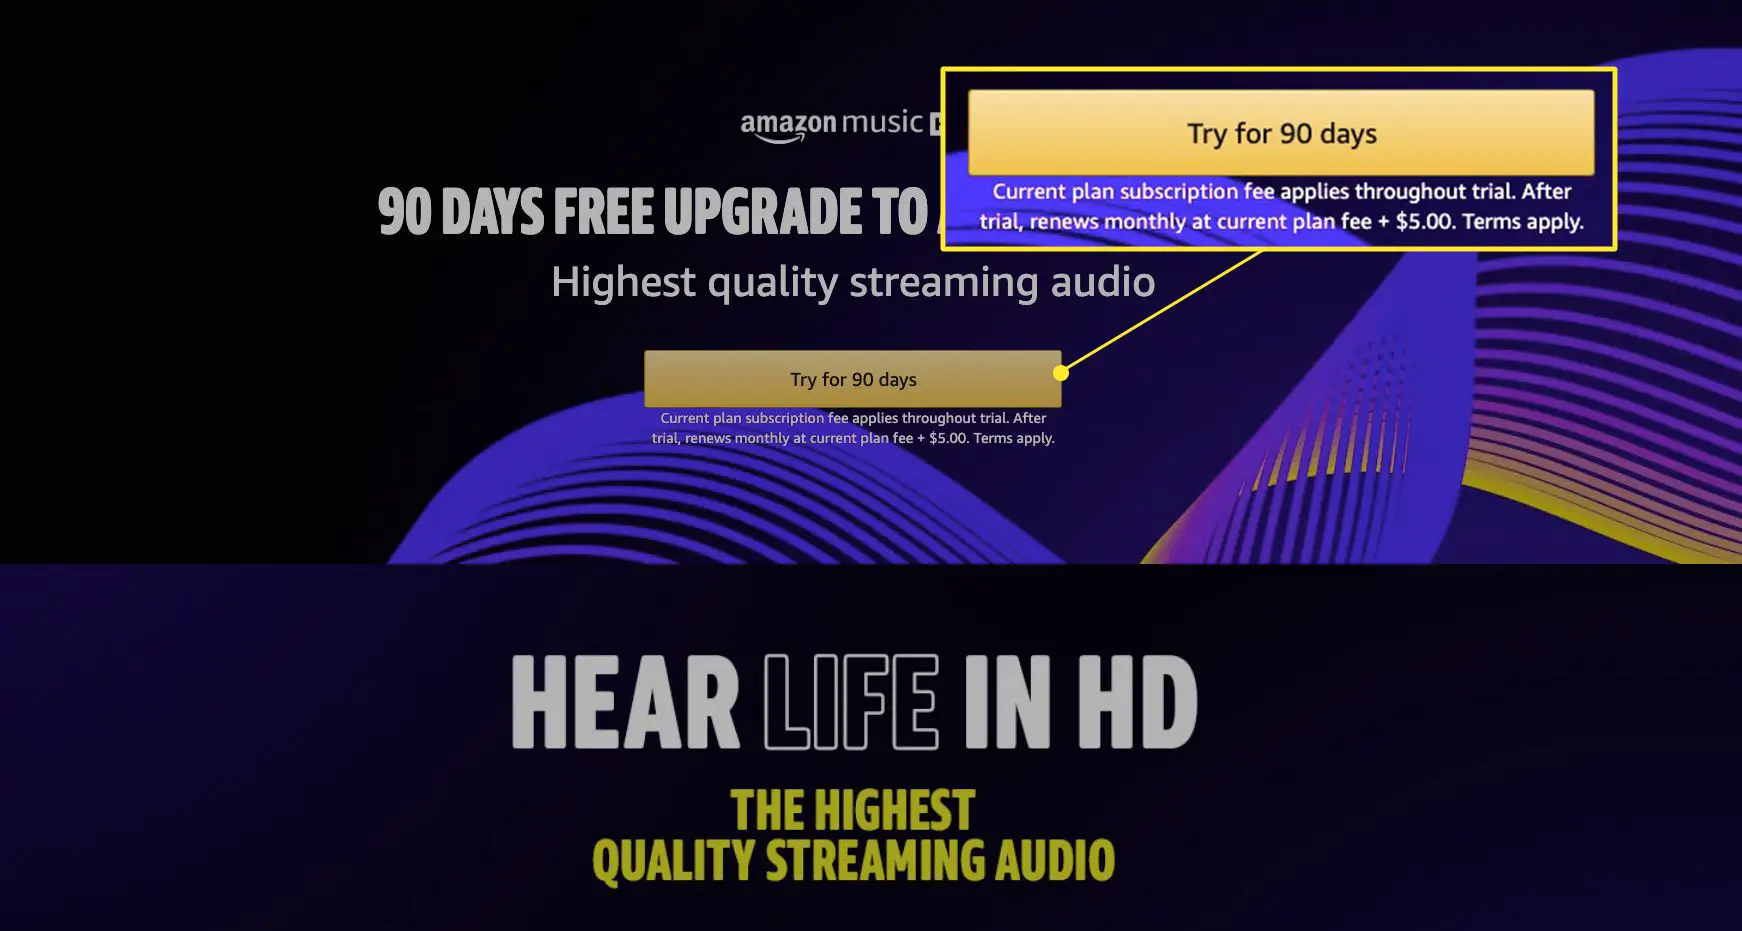 Página Amazon Music HD com "Experimente por 90 dias" destacado